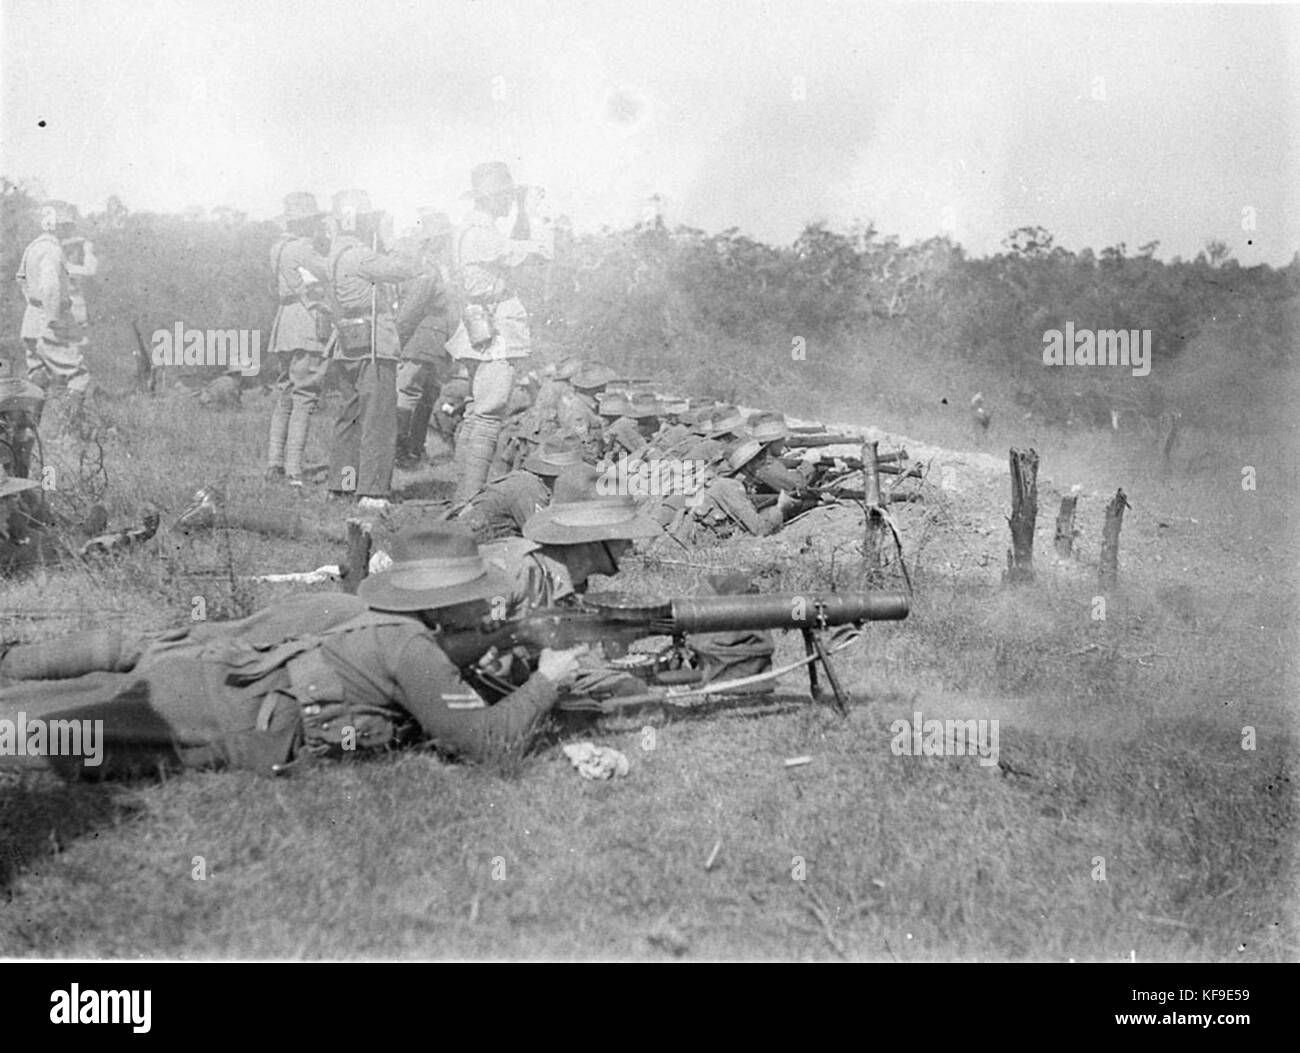 9592 infantes australiano en práctica musketry Foto de stock